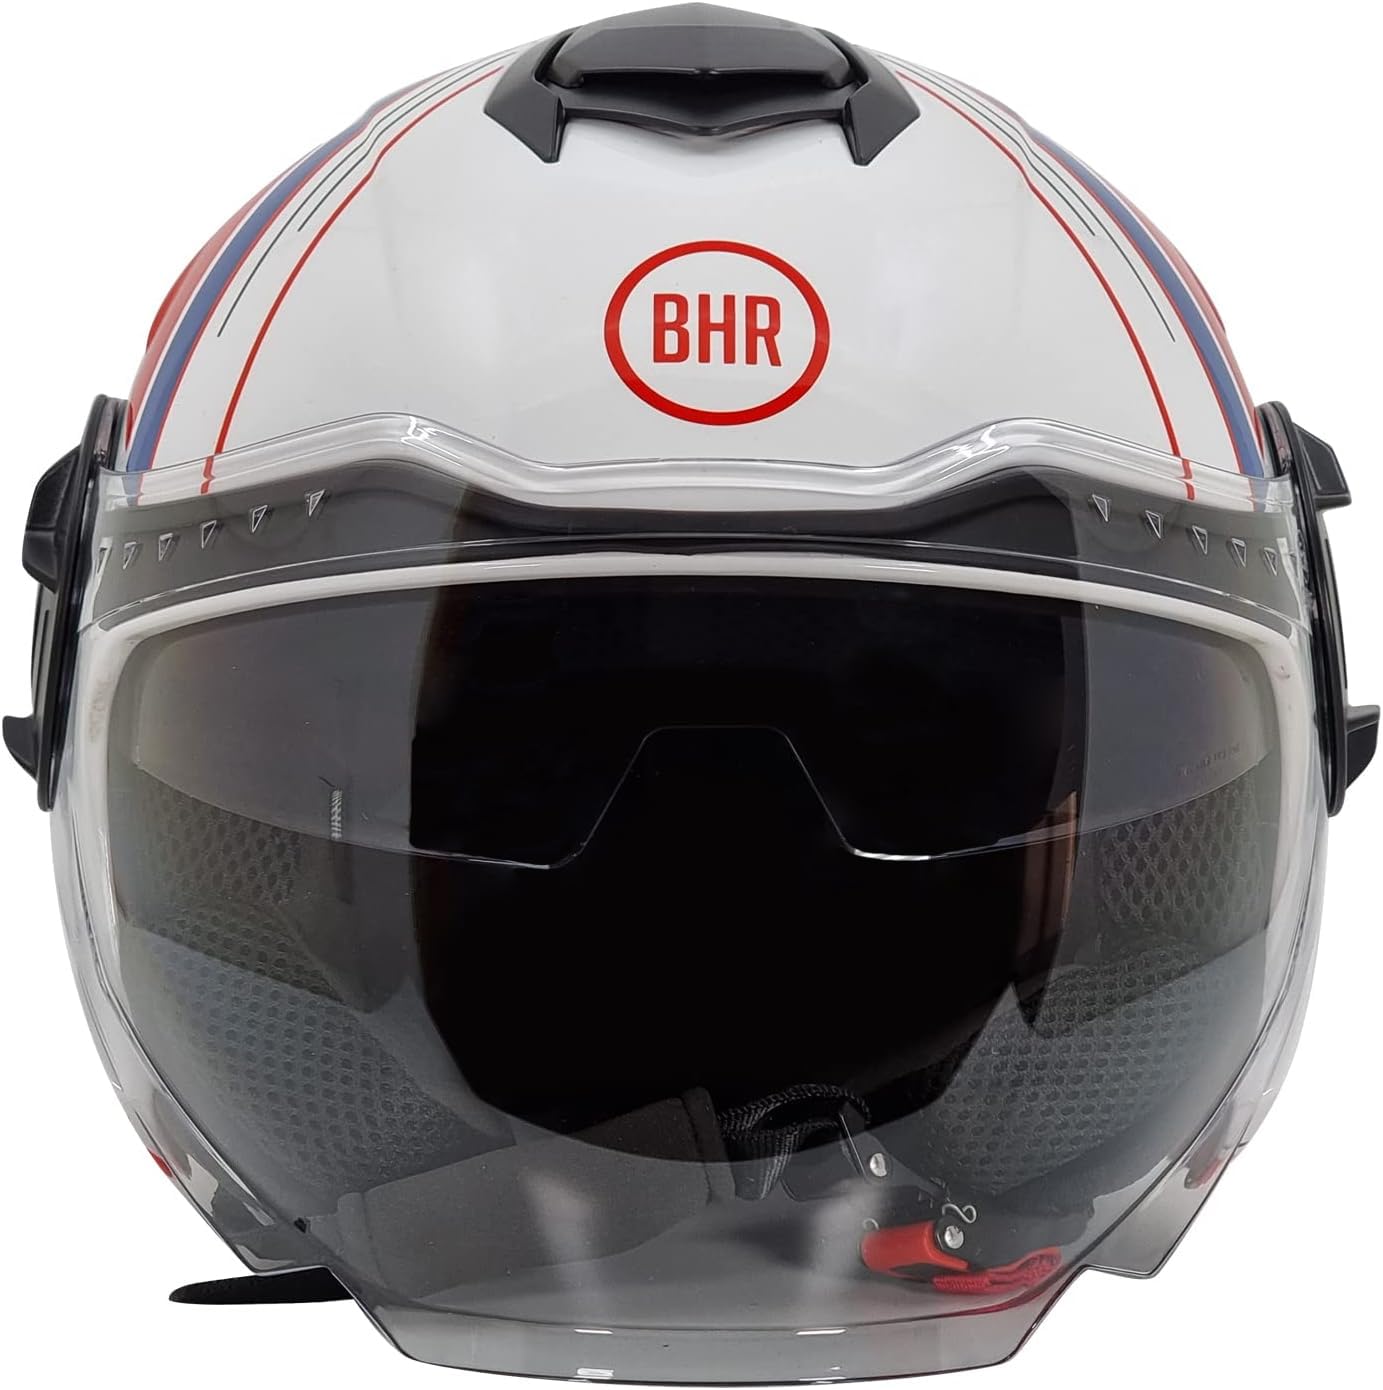 BHR Jet Helm Double Visor 830 Flash, Scooter Helm mit ECE 22.06 Zulassung, Leichter & komfortabler Jet Helm mit innenliegender Sonnenblende, Cool White, L